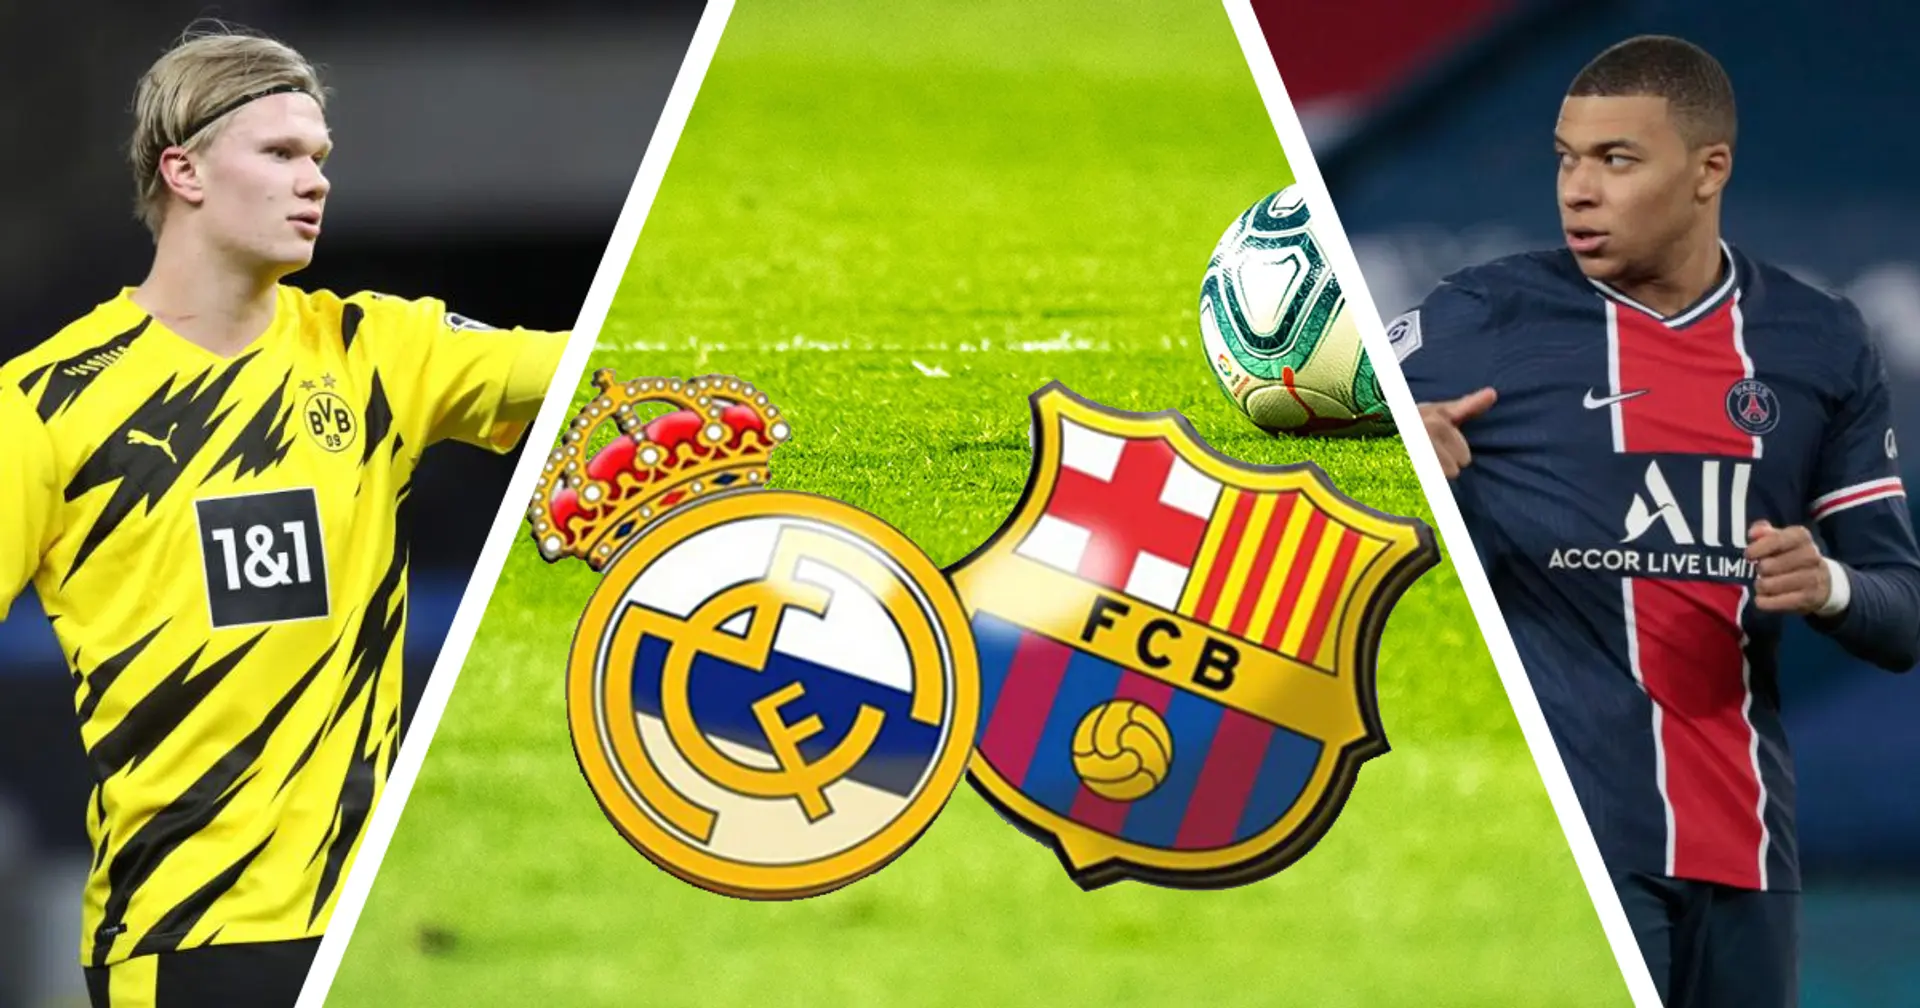 ¿Mbappé o Haaland? ¿Qué jugador funcionaría mejor en el Barça y cuál en el Madrid?